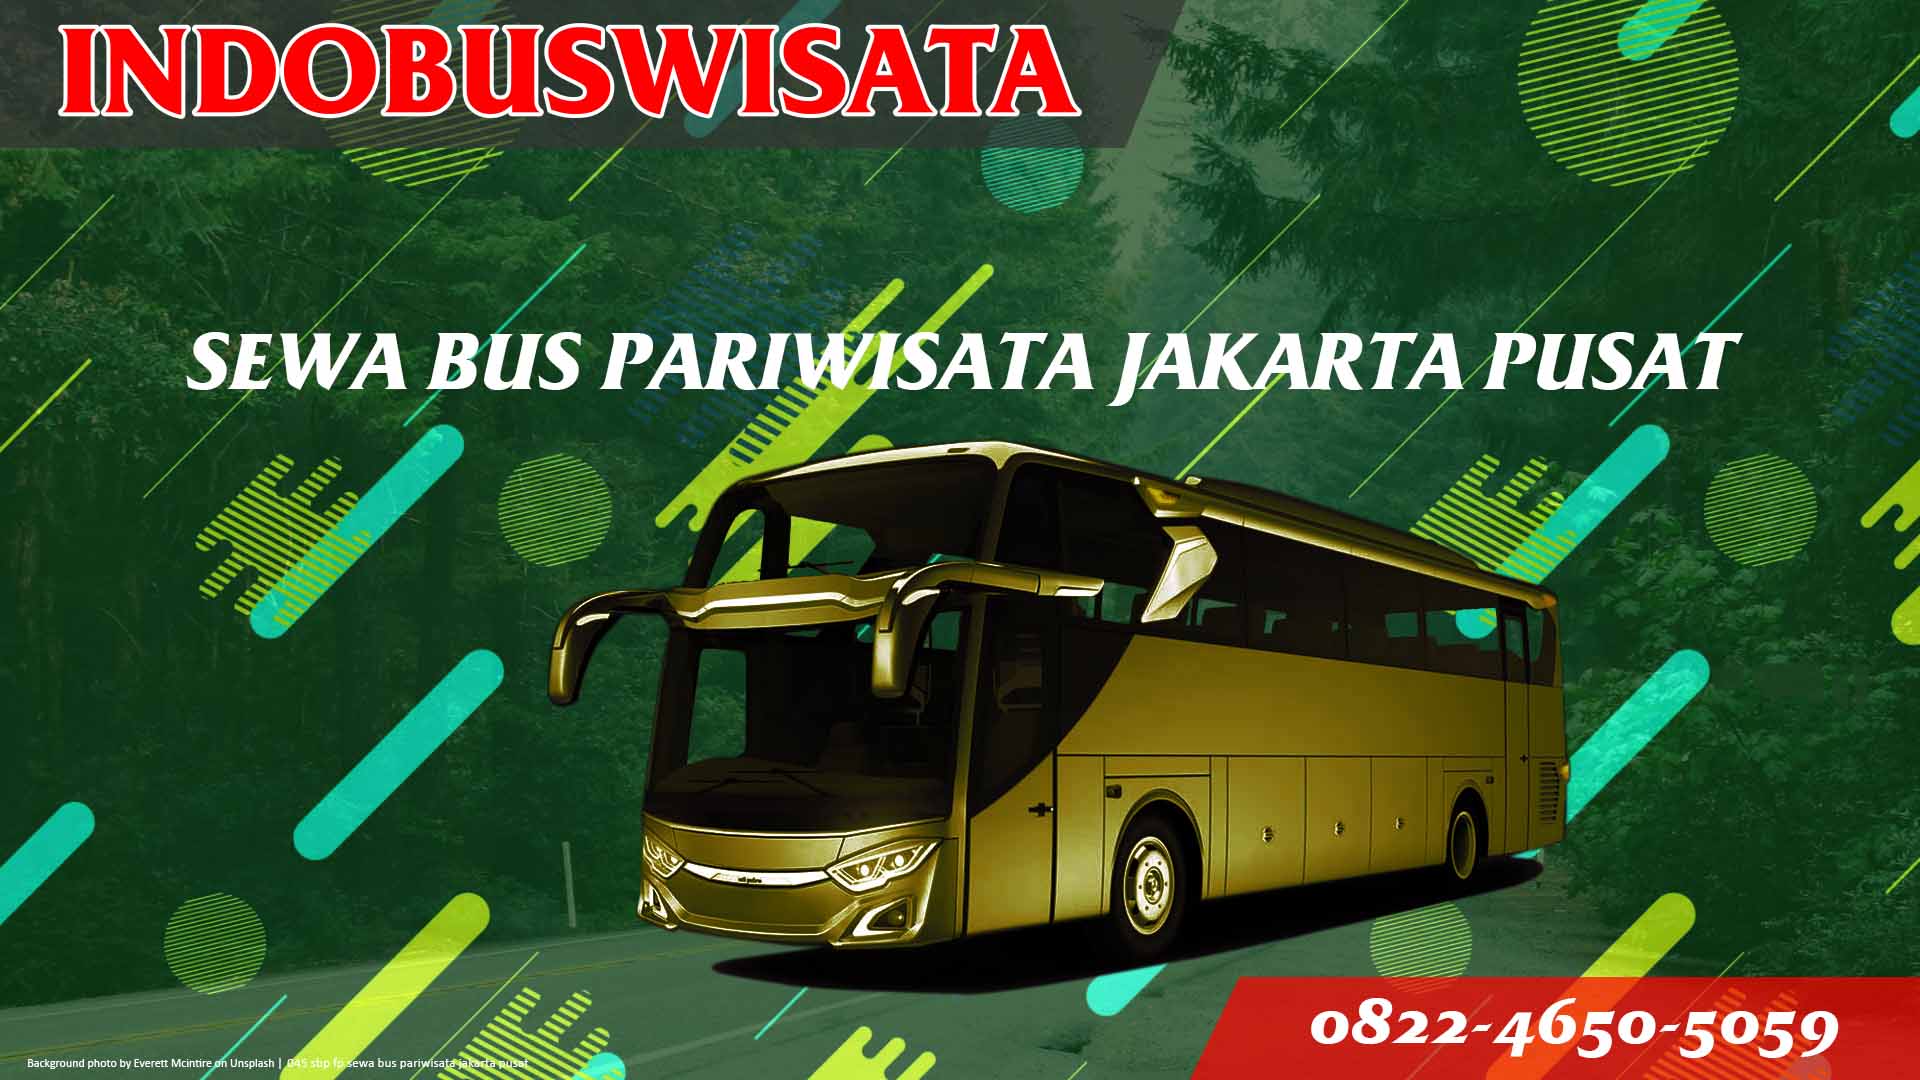 045 Sbp Fp Sewa Bus Pariwisata Jakarta Pusat Indobuswisata